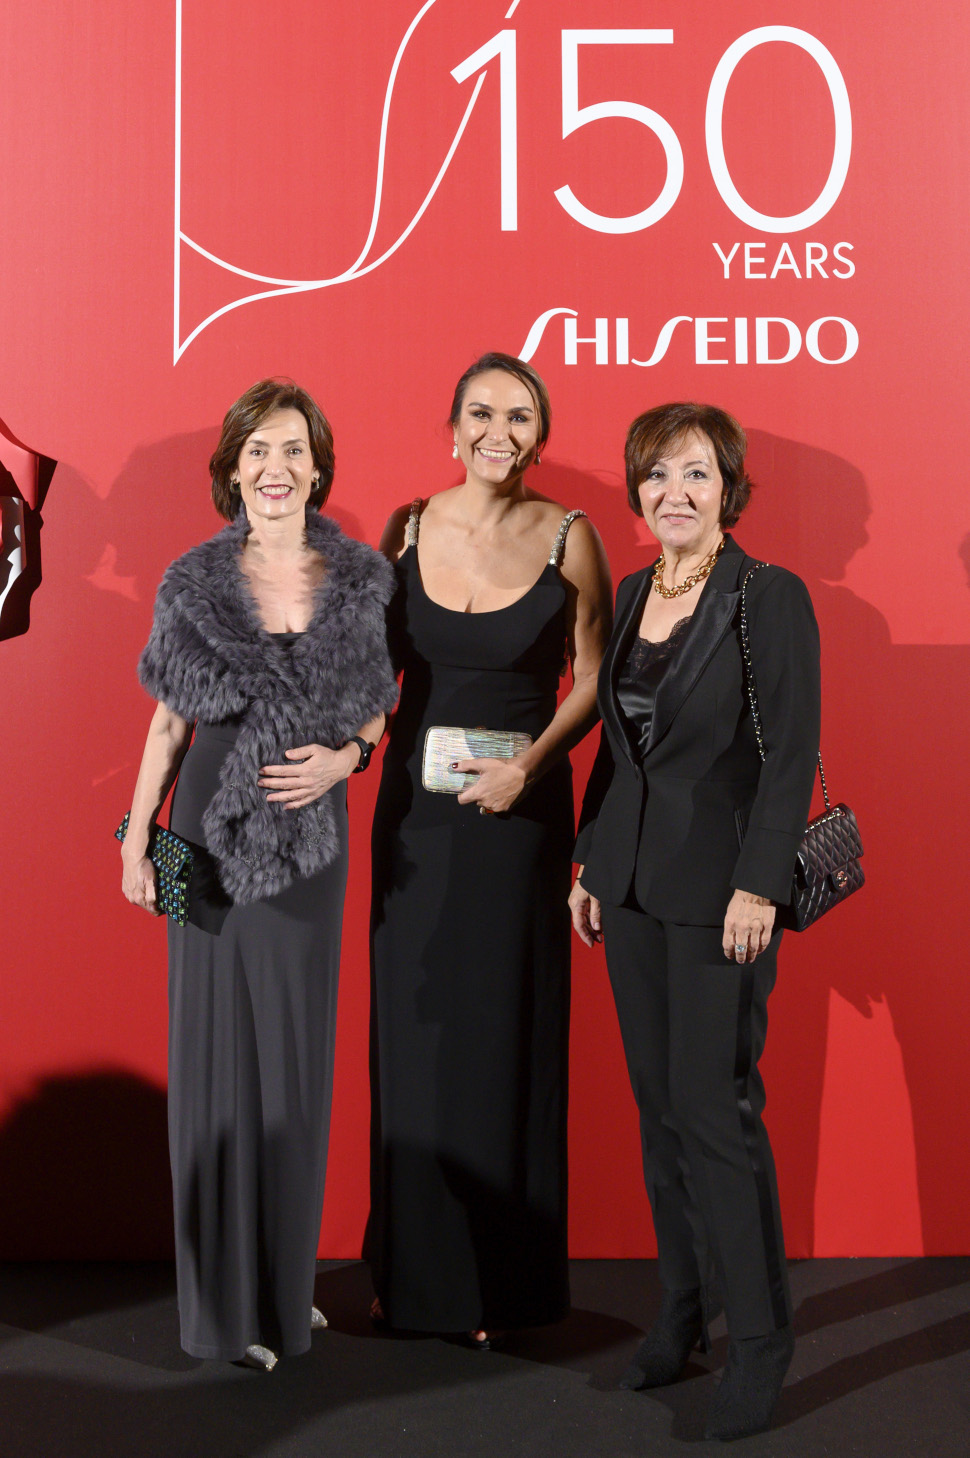 Di izquierda a derecha: Marisa Manzano (Prisa Media), Ainhara Viñarás (Shiseido) y Esther Valdivia (Publicaciones Profesionales).